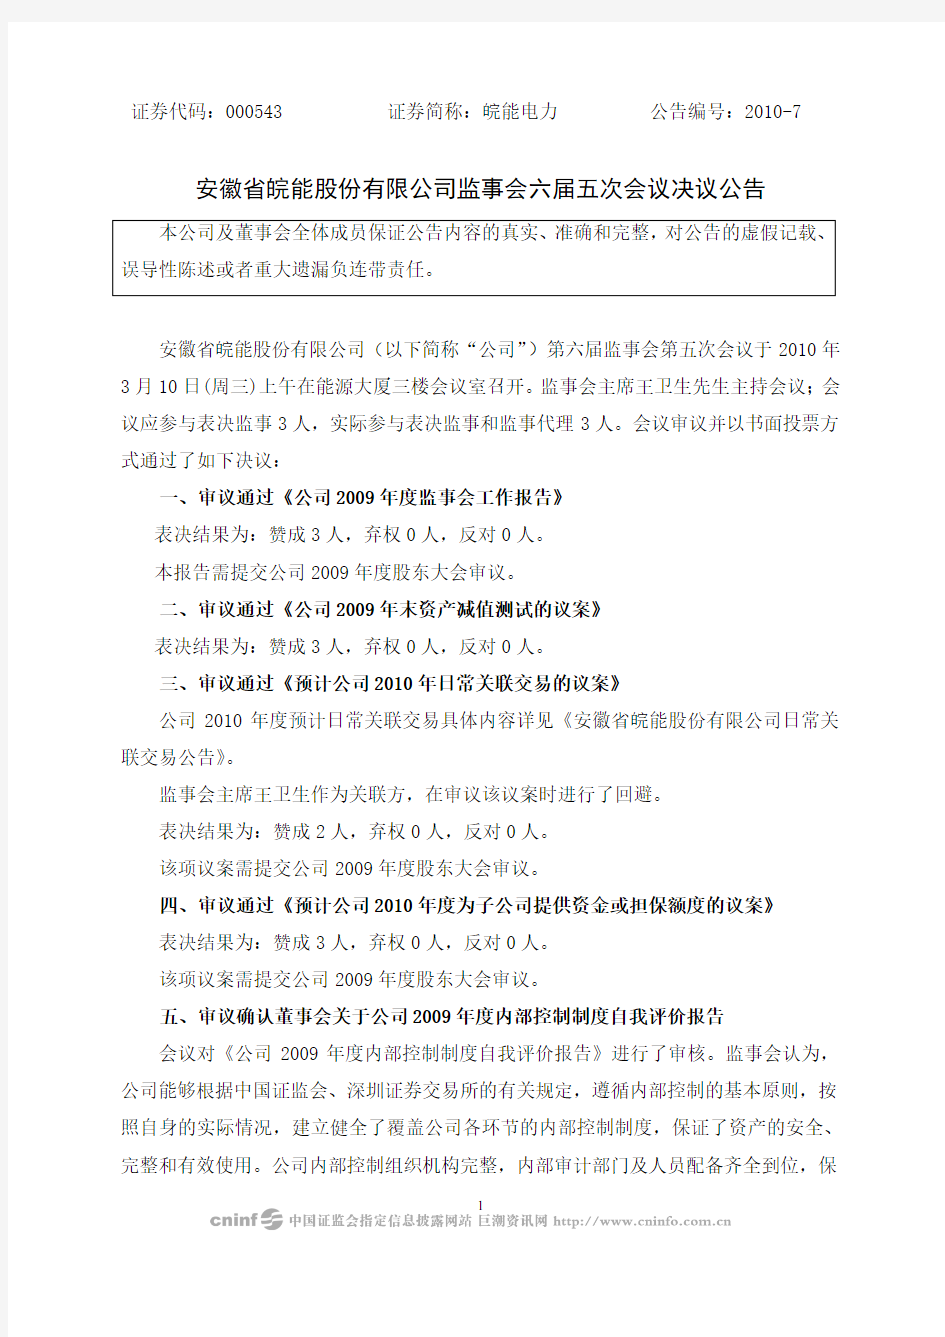 安徽省皖能股份有限公司监事会六届五次会议决议公告